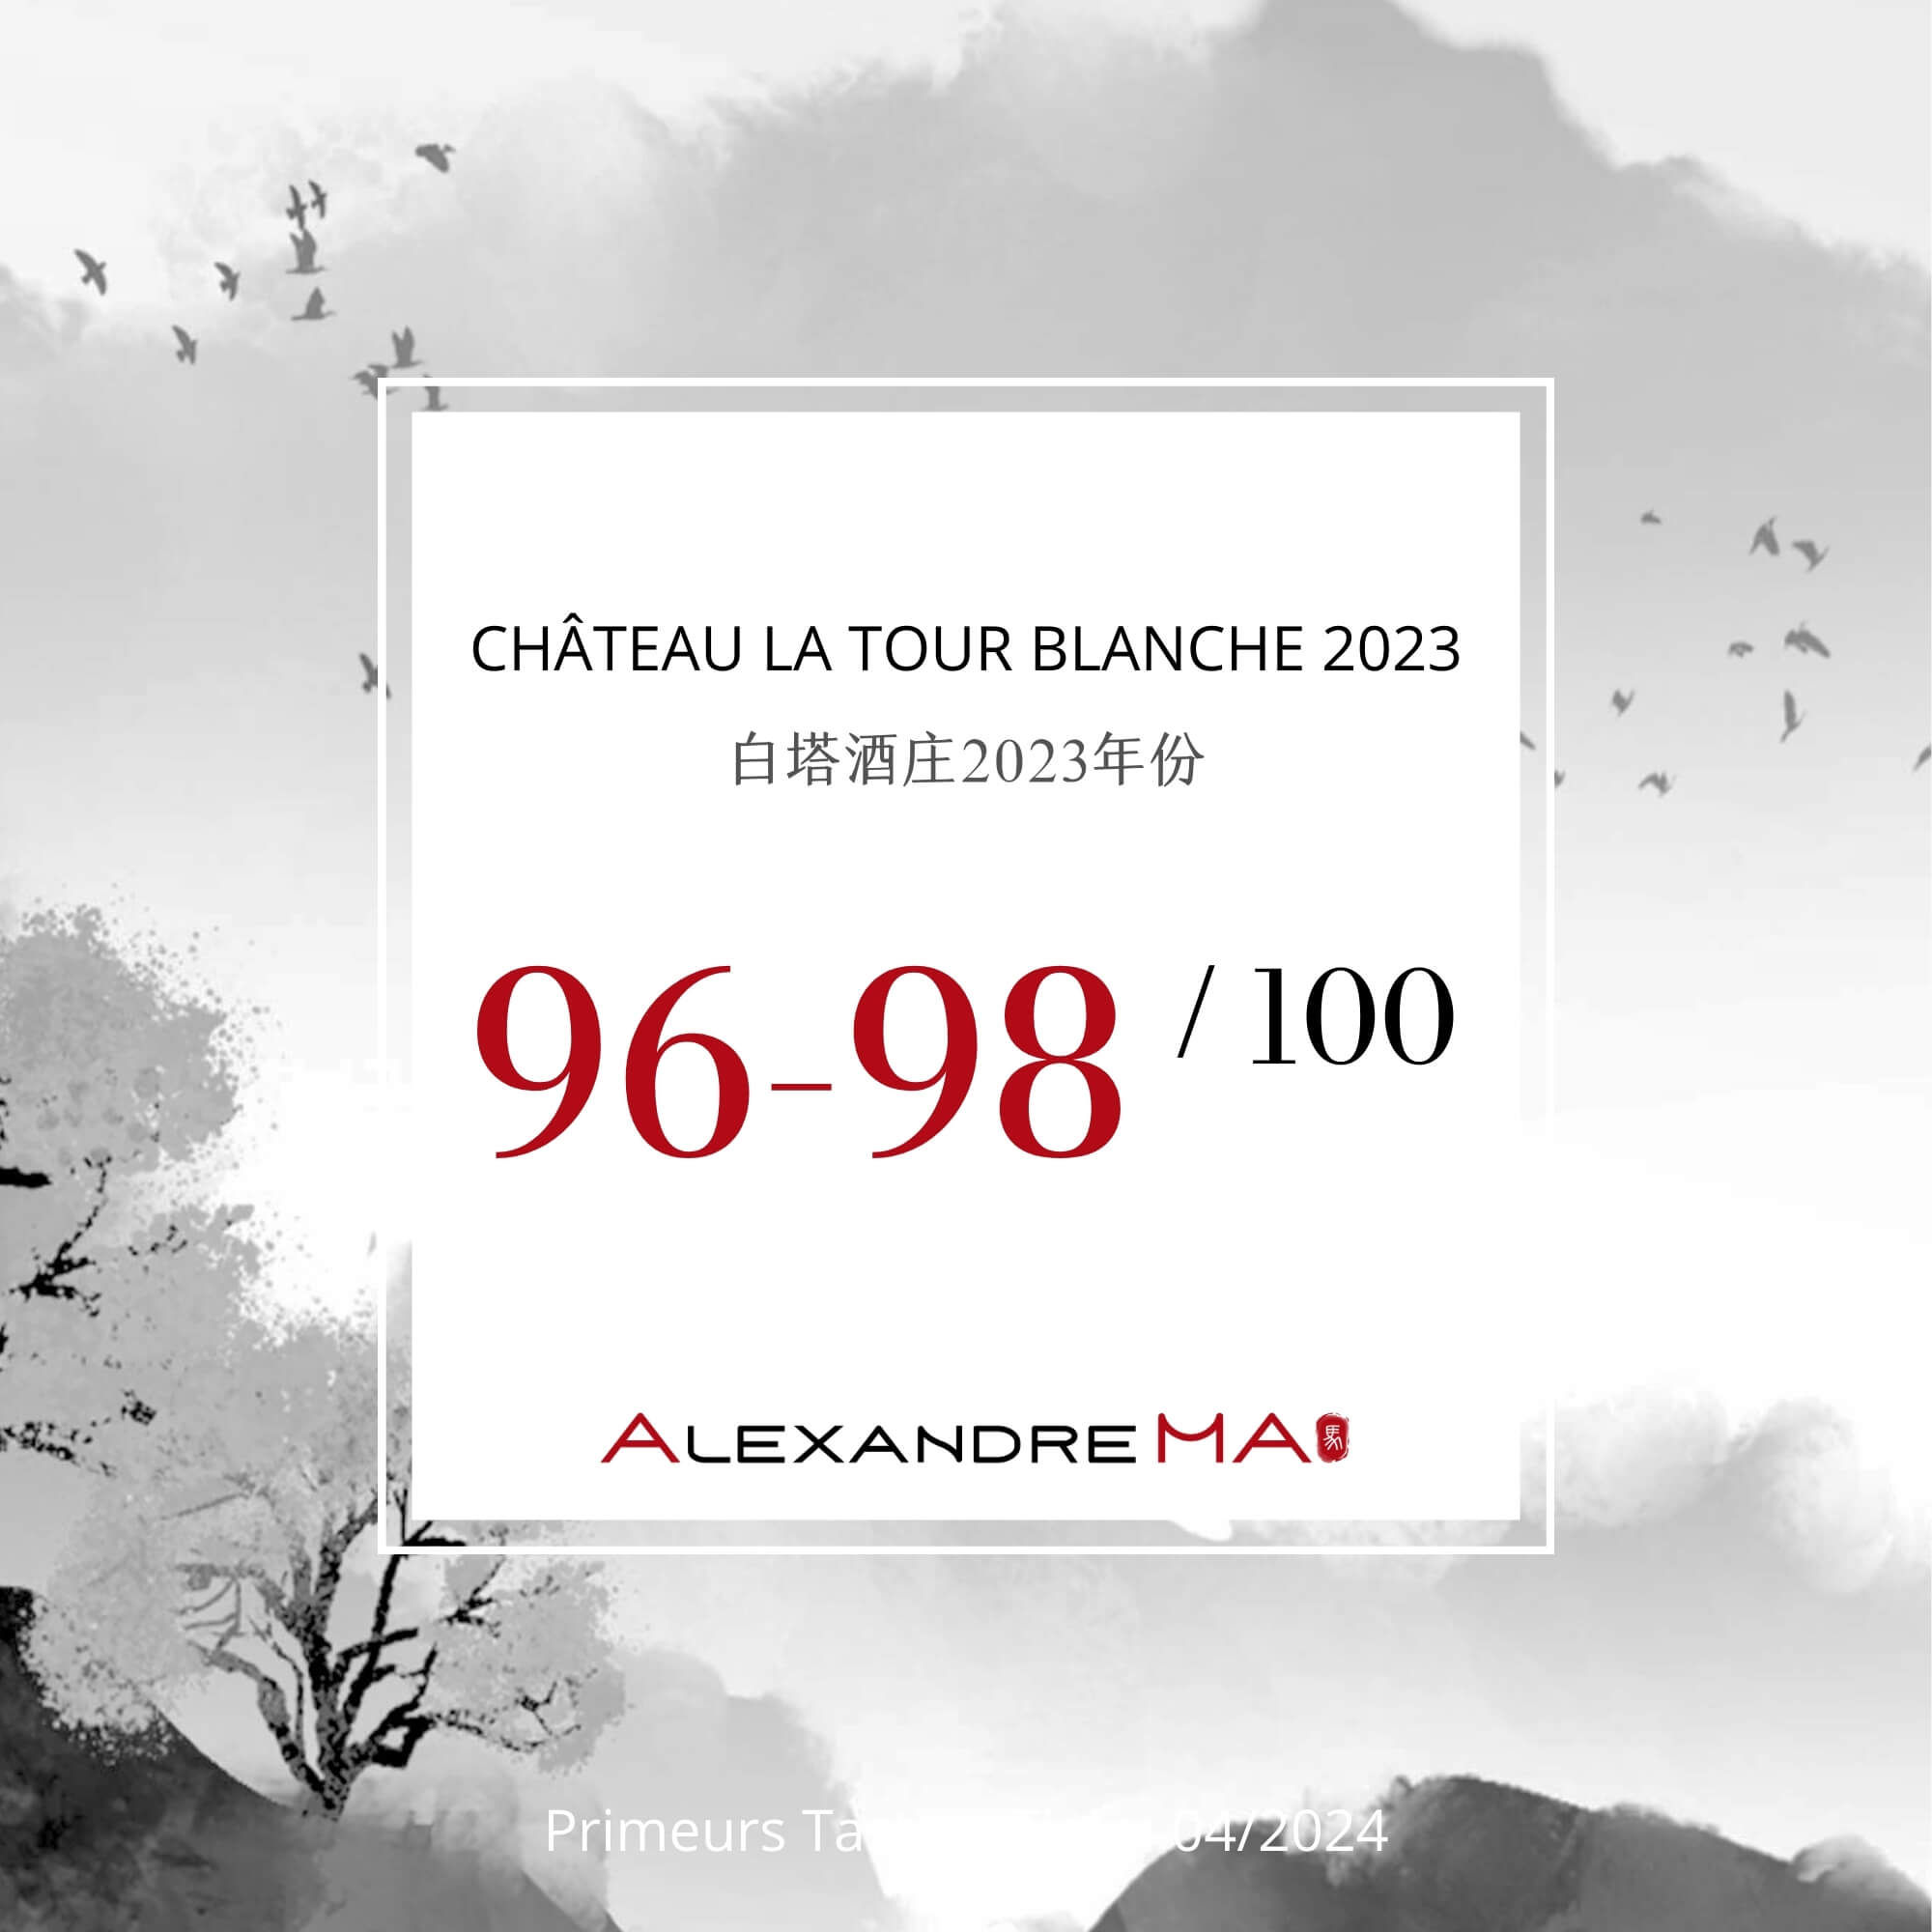 Château La Tour Blanche 2023 Primeurs - Alexandre MA